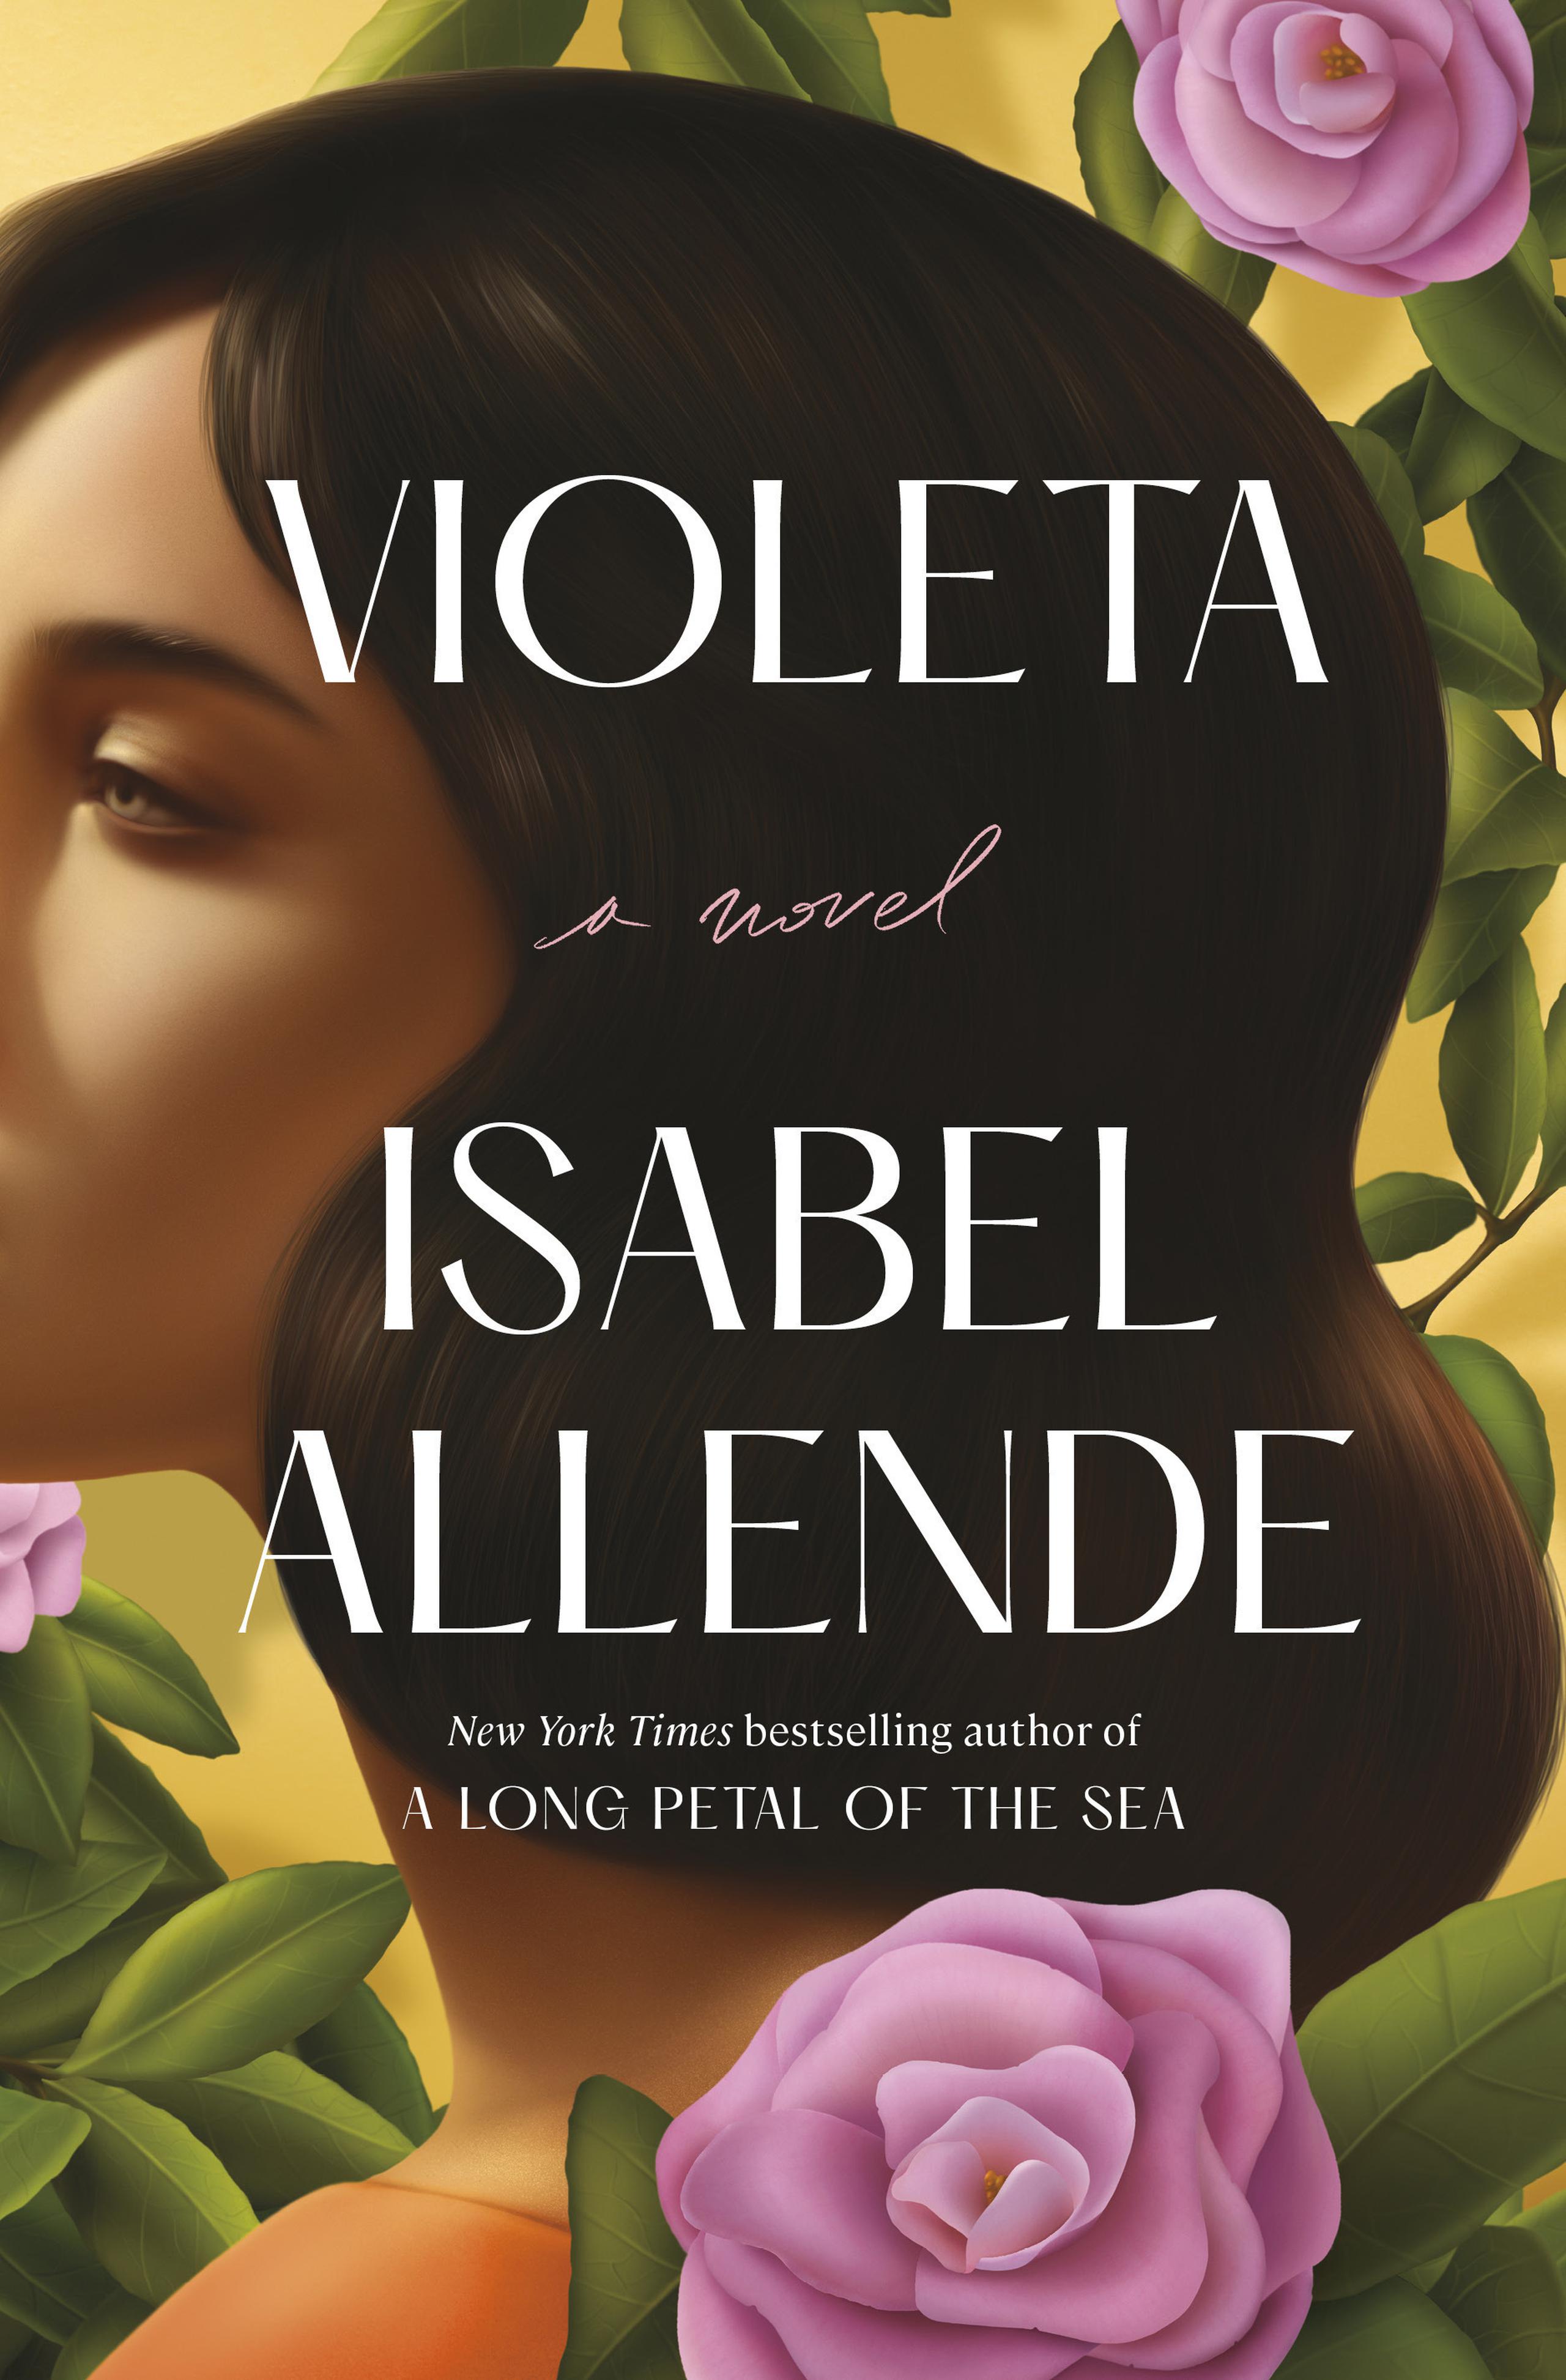 En esta imagen difundida por Ballantine, la portada de "Violeta" de Isabel Allende, en su edición en inglés. (Ballantine vía AP)